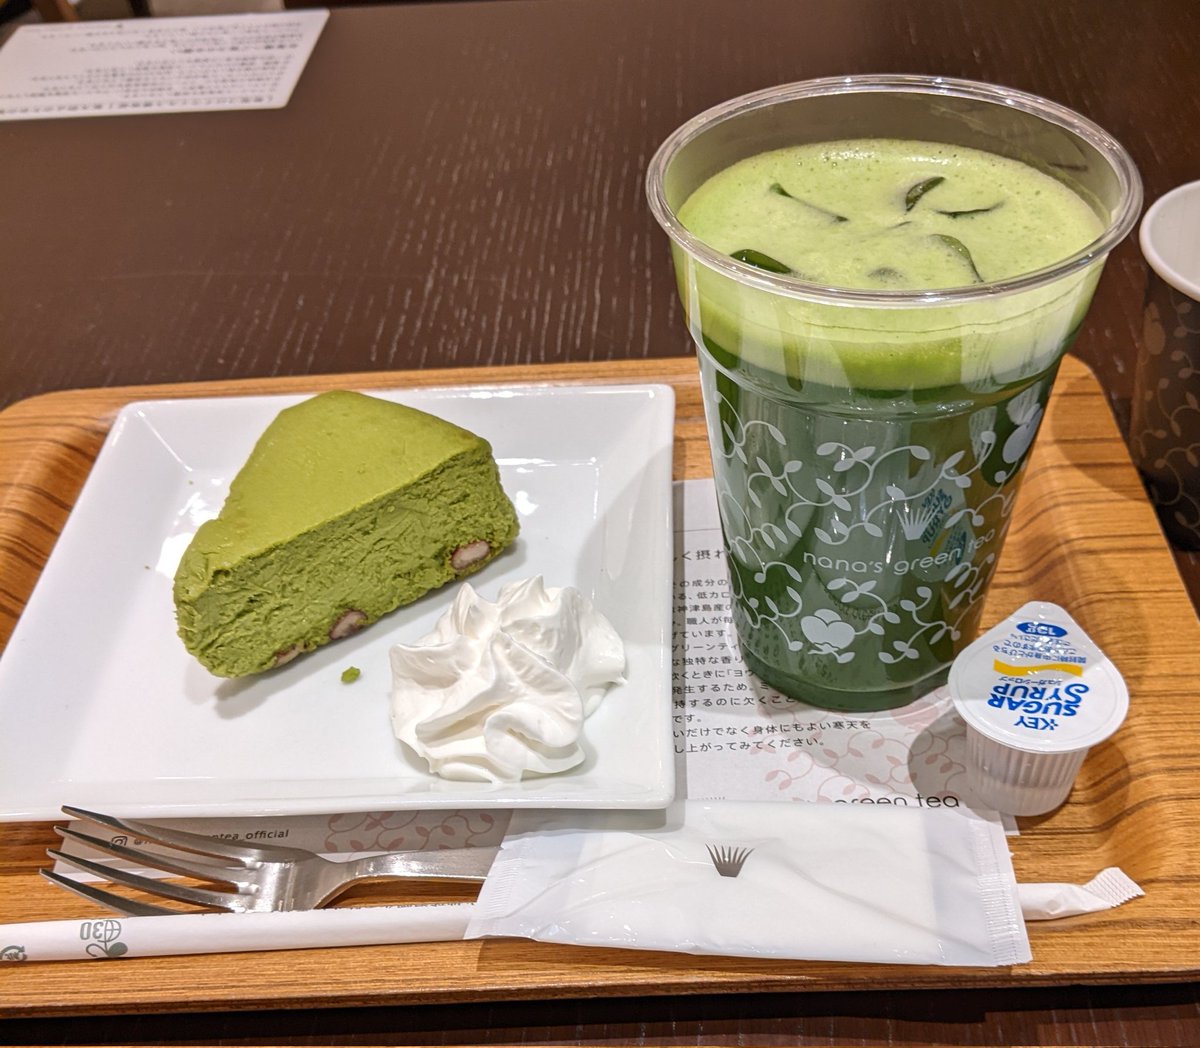 nana's green teaでホッとひと息抹茶チーズケーキ抹茶グリーンティー/setチーズケーキはこんなに小さいのに重量感は凄いです！濃密で高級でした。グリーンティーはアイスでいただきました。とてもさっぱりした味です。#ナナズグリーンティー 